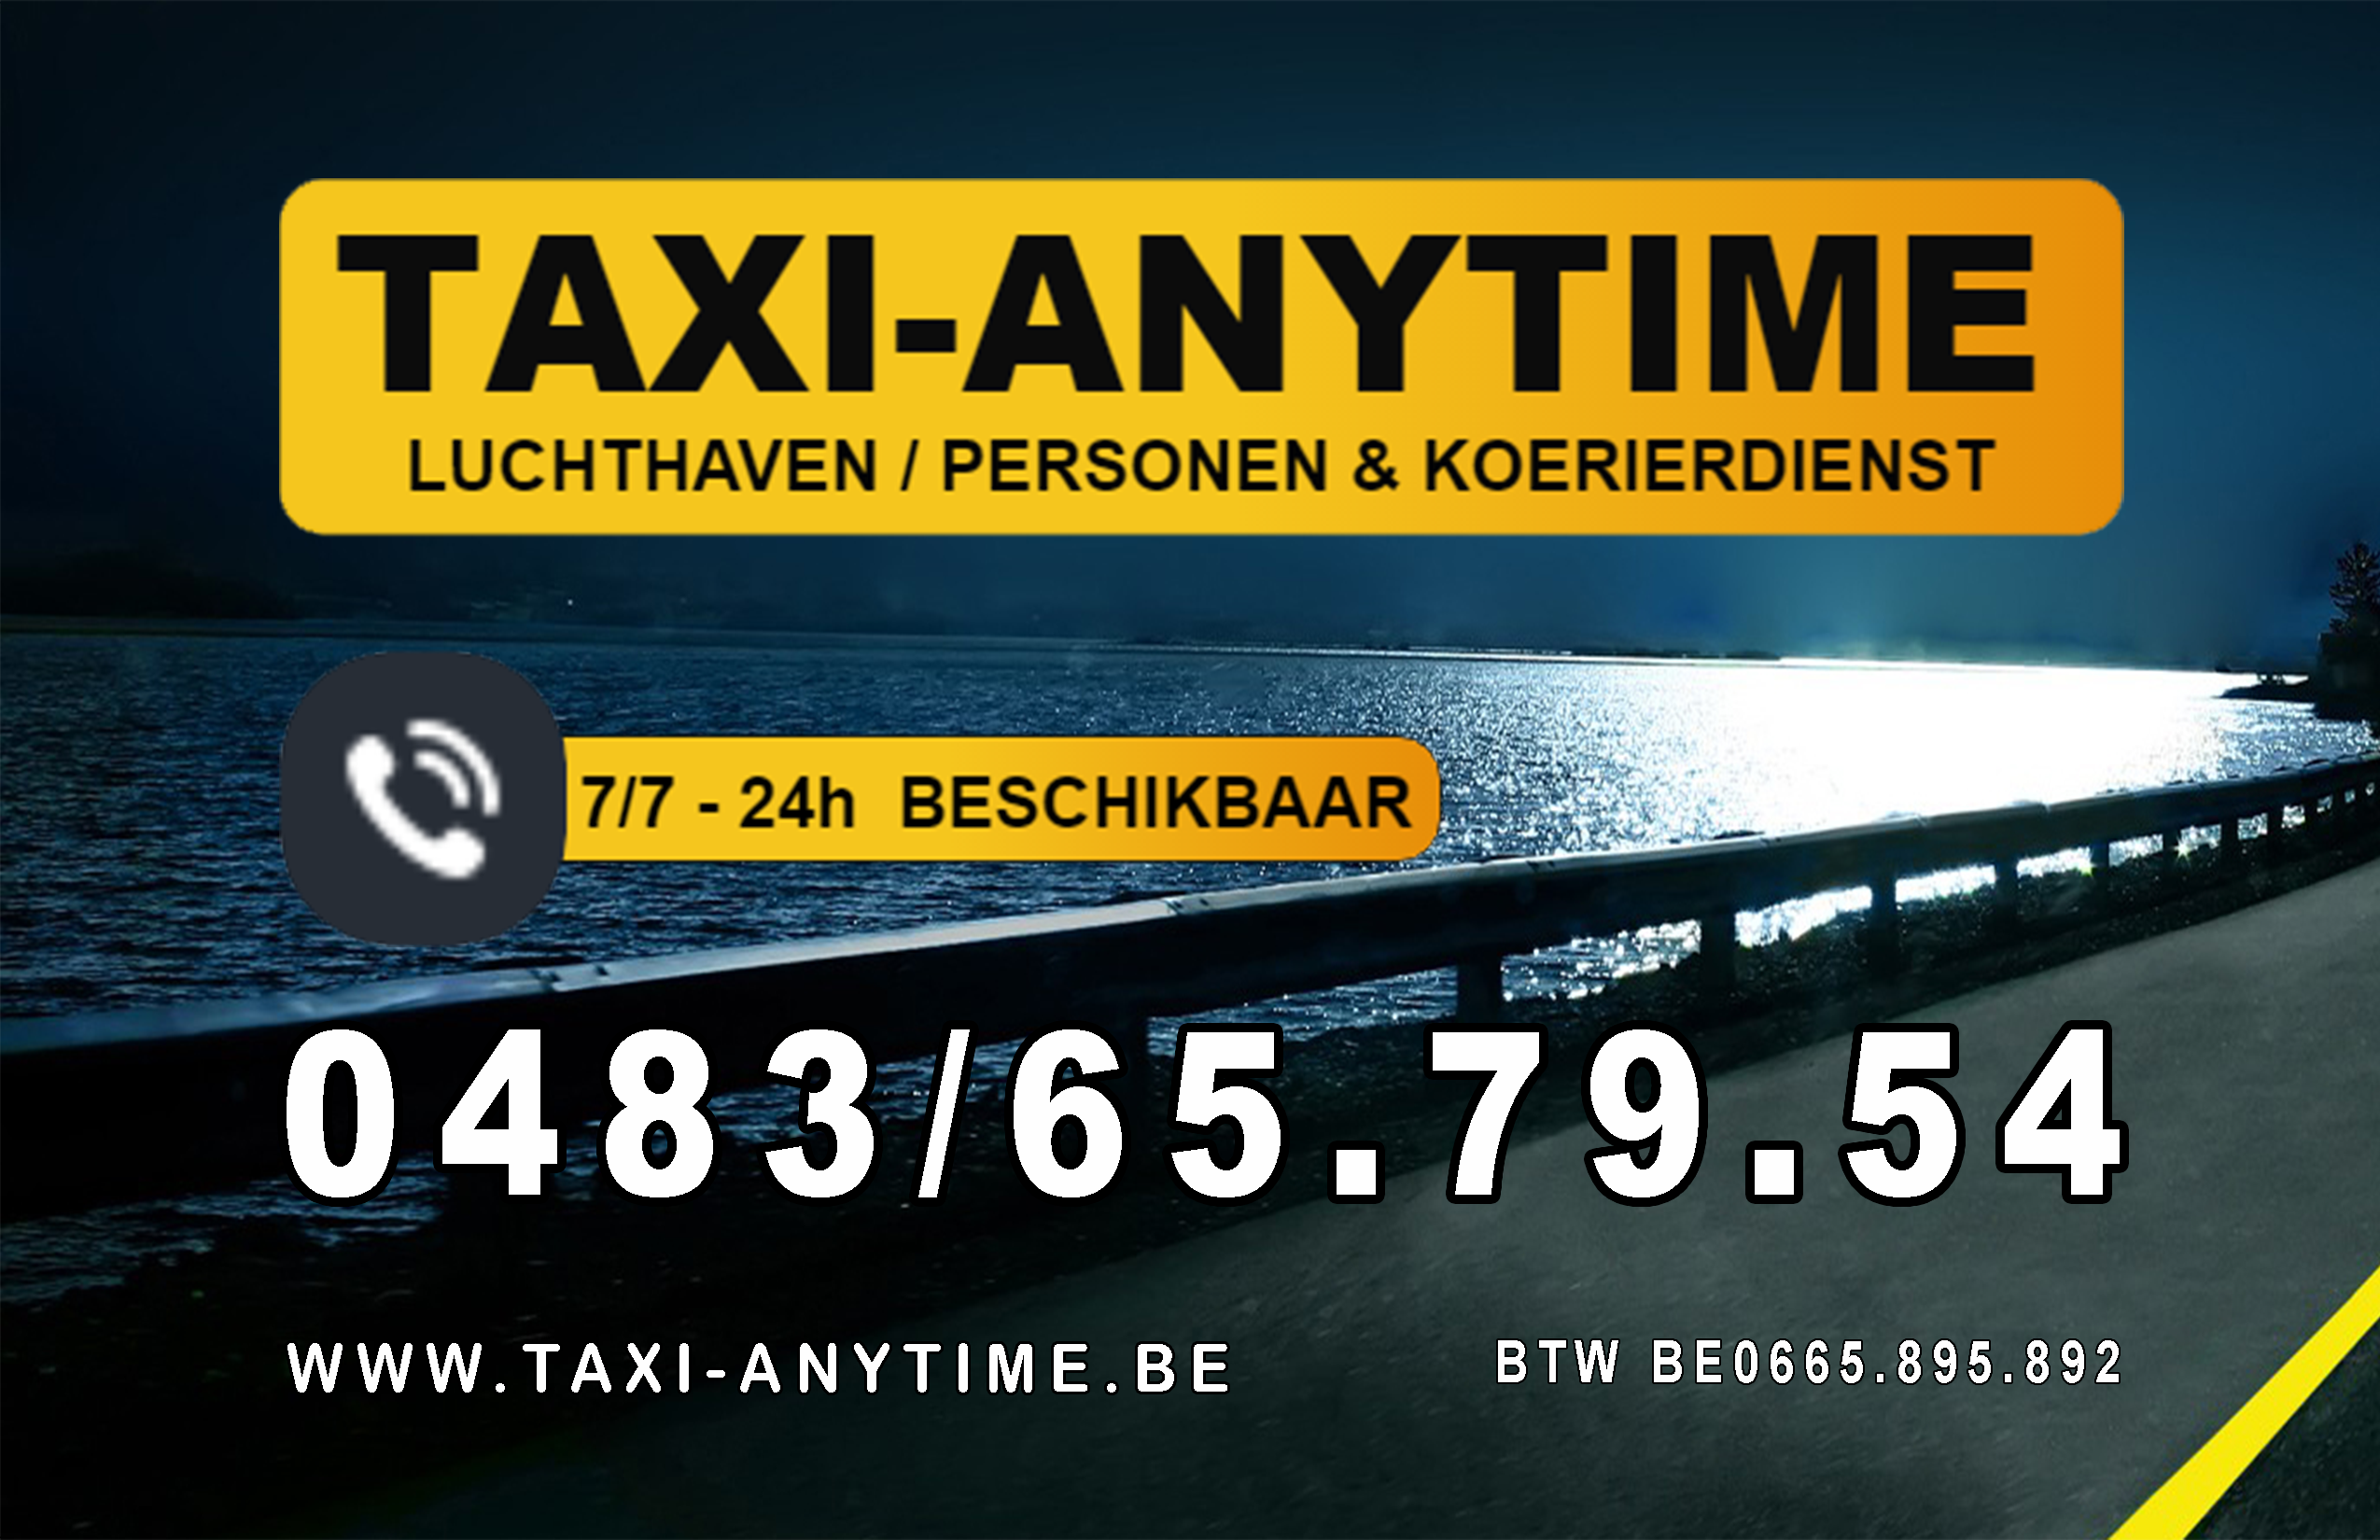 taxibedrijven met luchthavenvervoer Uitkerke Taxi-anytime